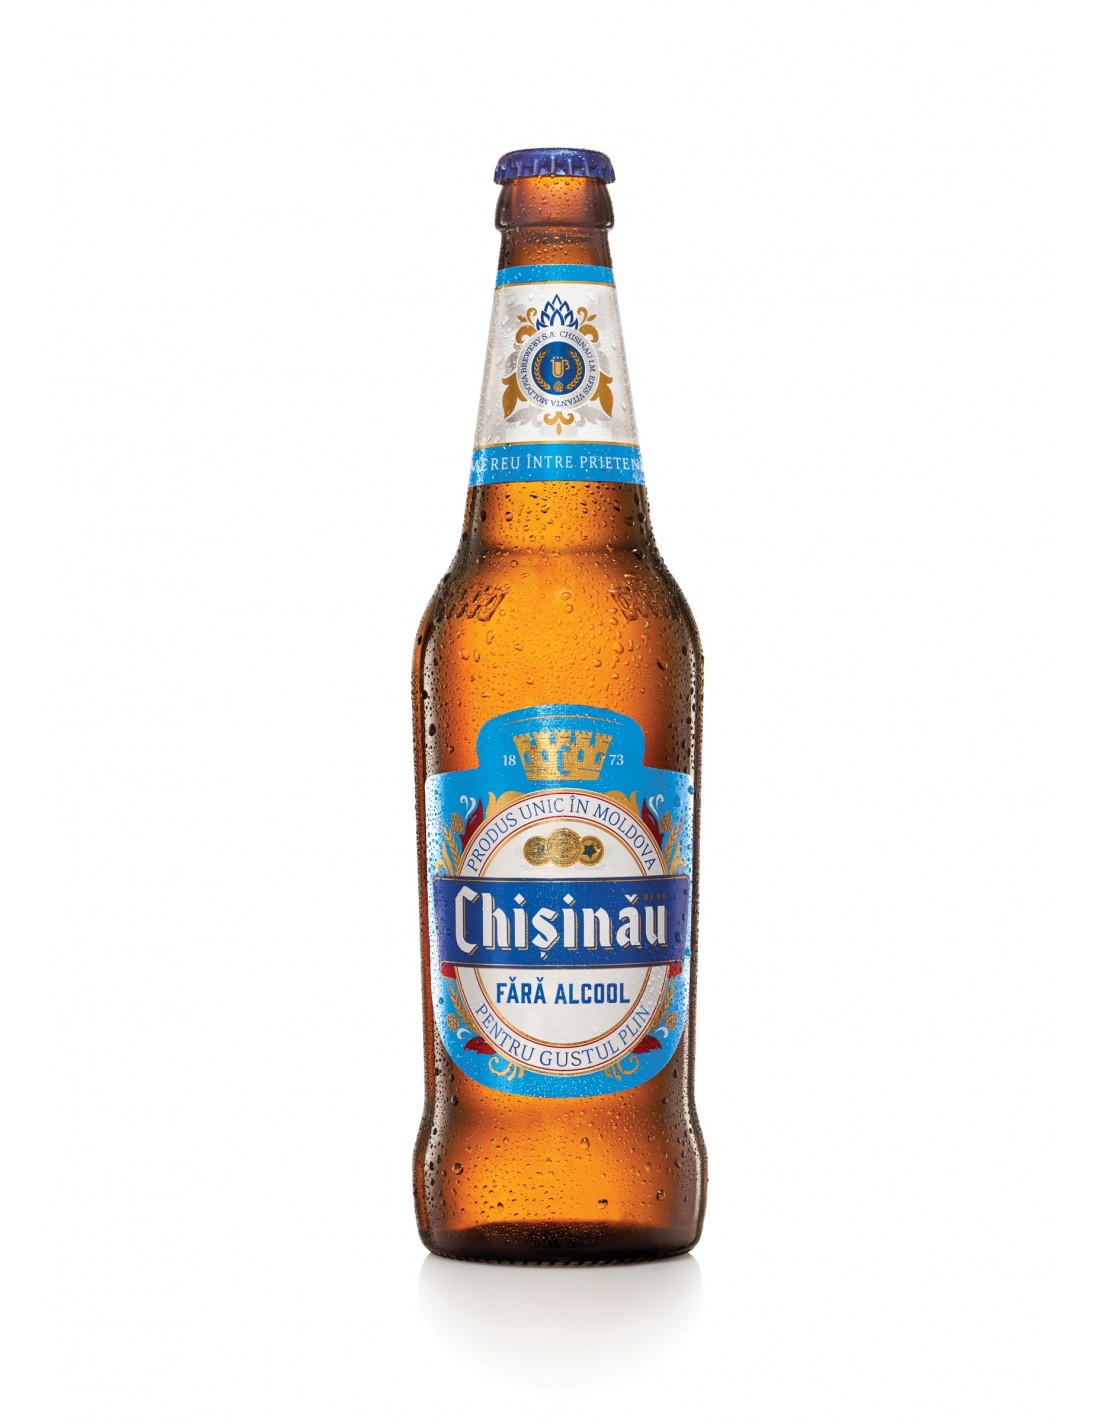 Bere blonda fara alcool Chisinau, 0.5% alc., 0.5L, Republica Moldova